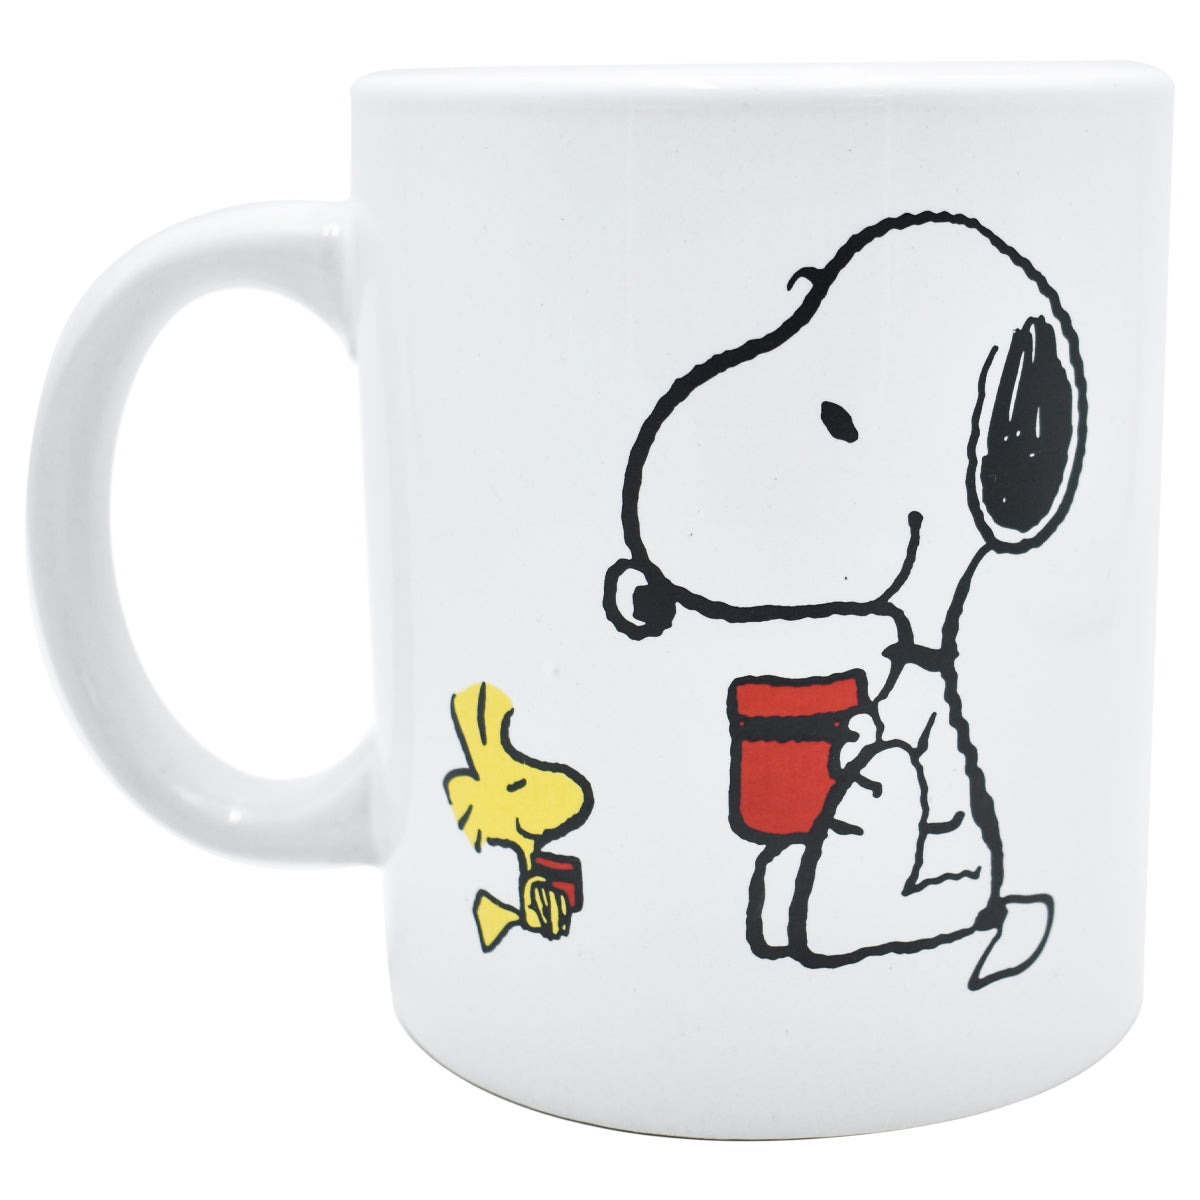 Taza de Snoopy del aniversario de Peanuts